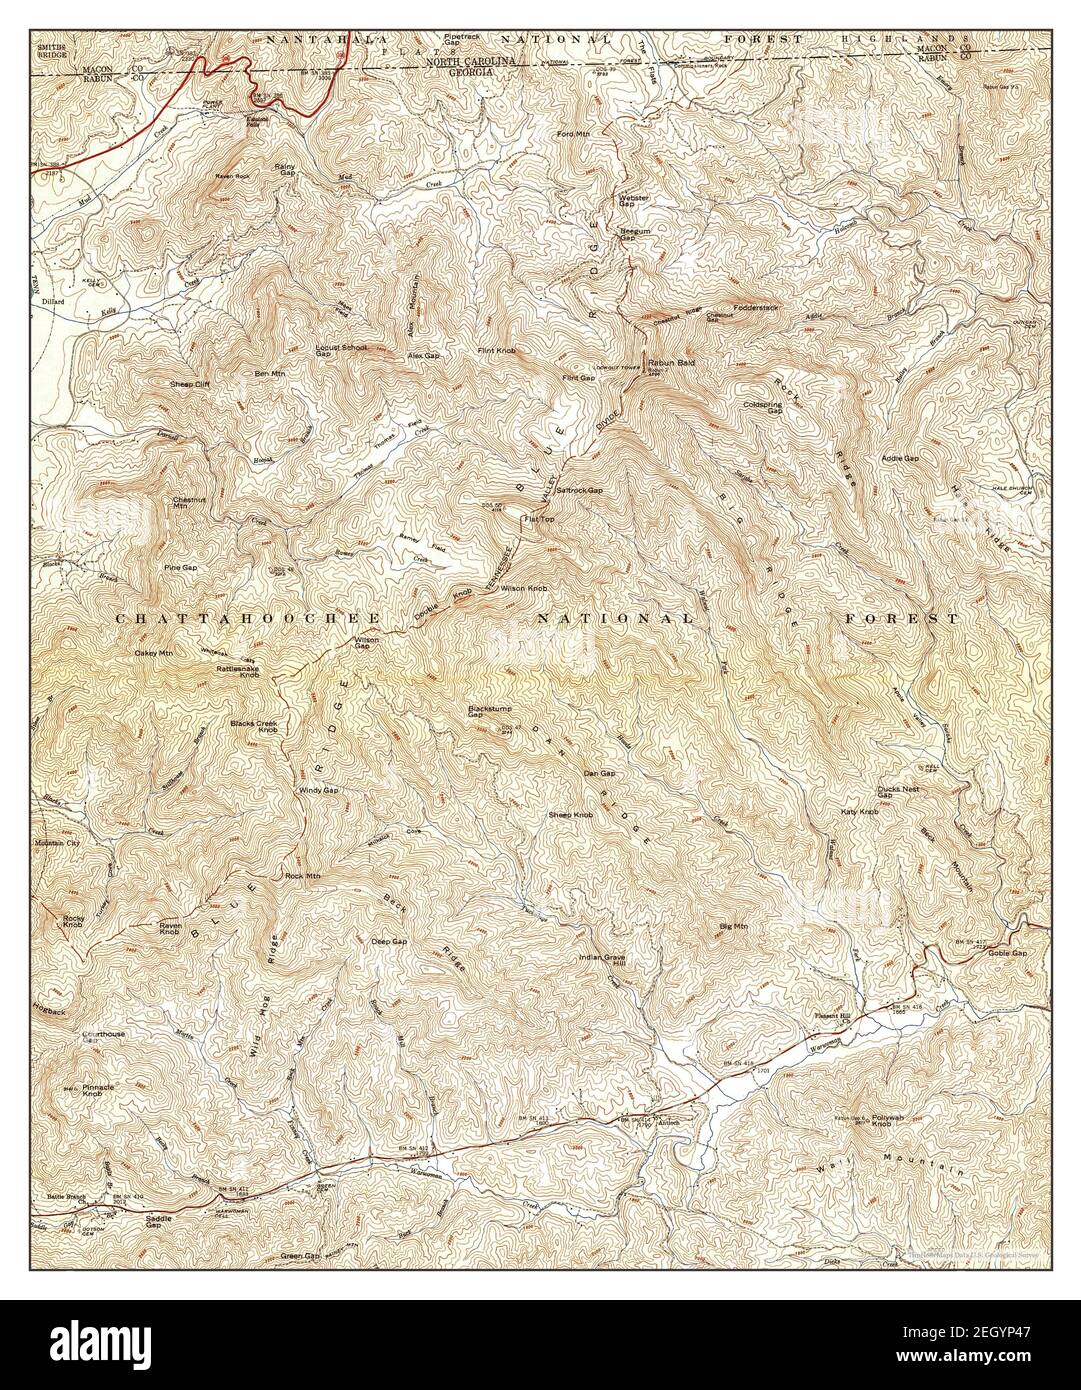 Rabun bald, Georgia, map 1947, 1:24000, Vereinigte Staaten von Amerika von Timeless Maps, Data U.S. Geological Survey Stockfoto